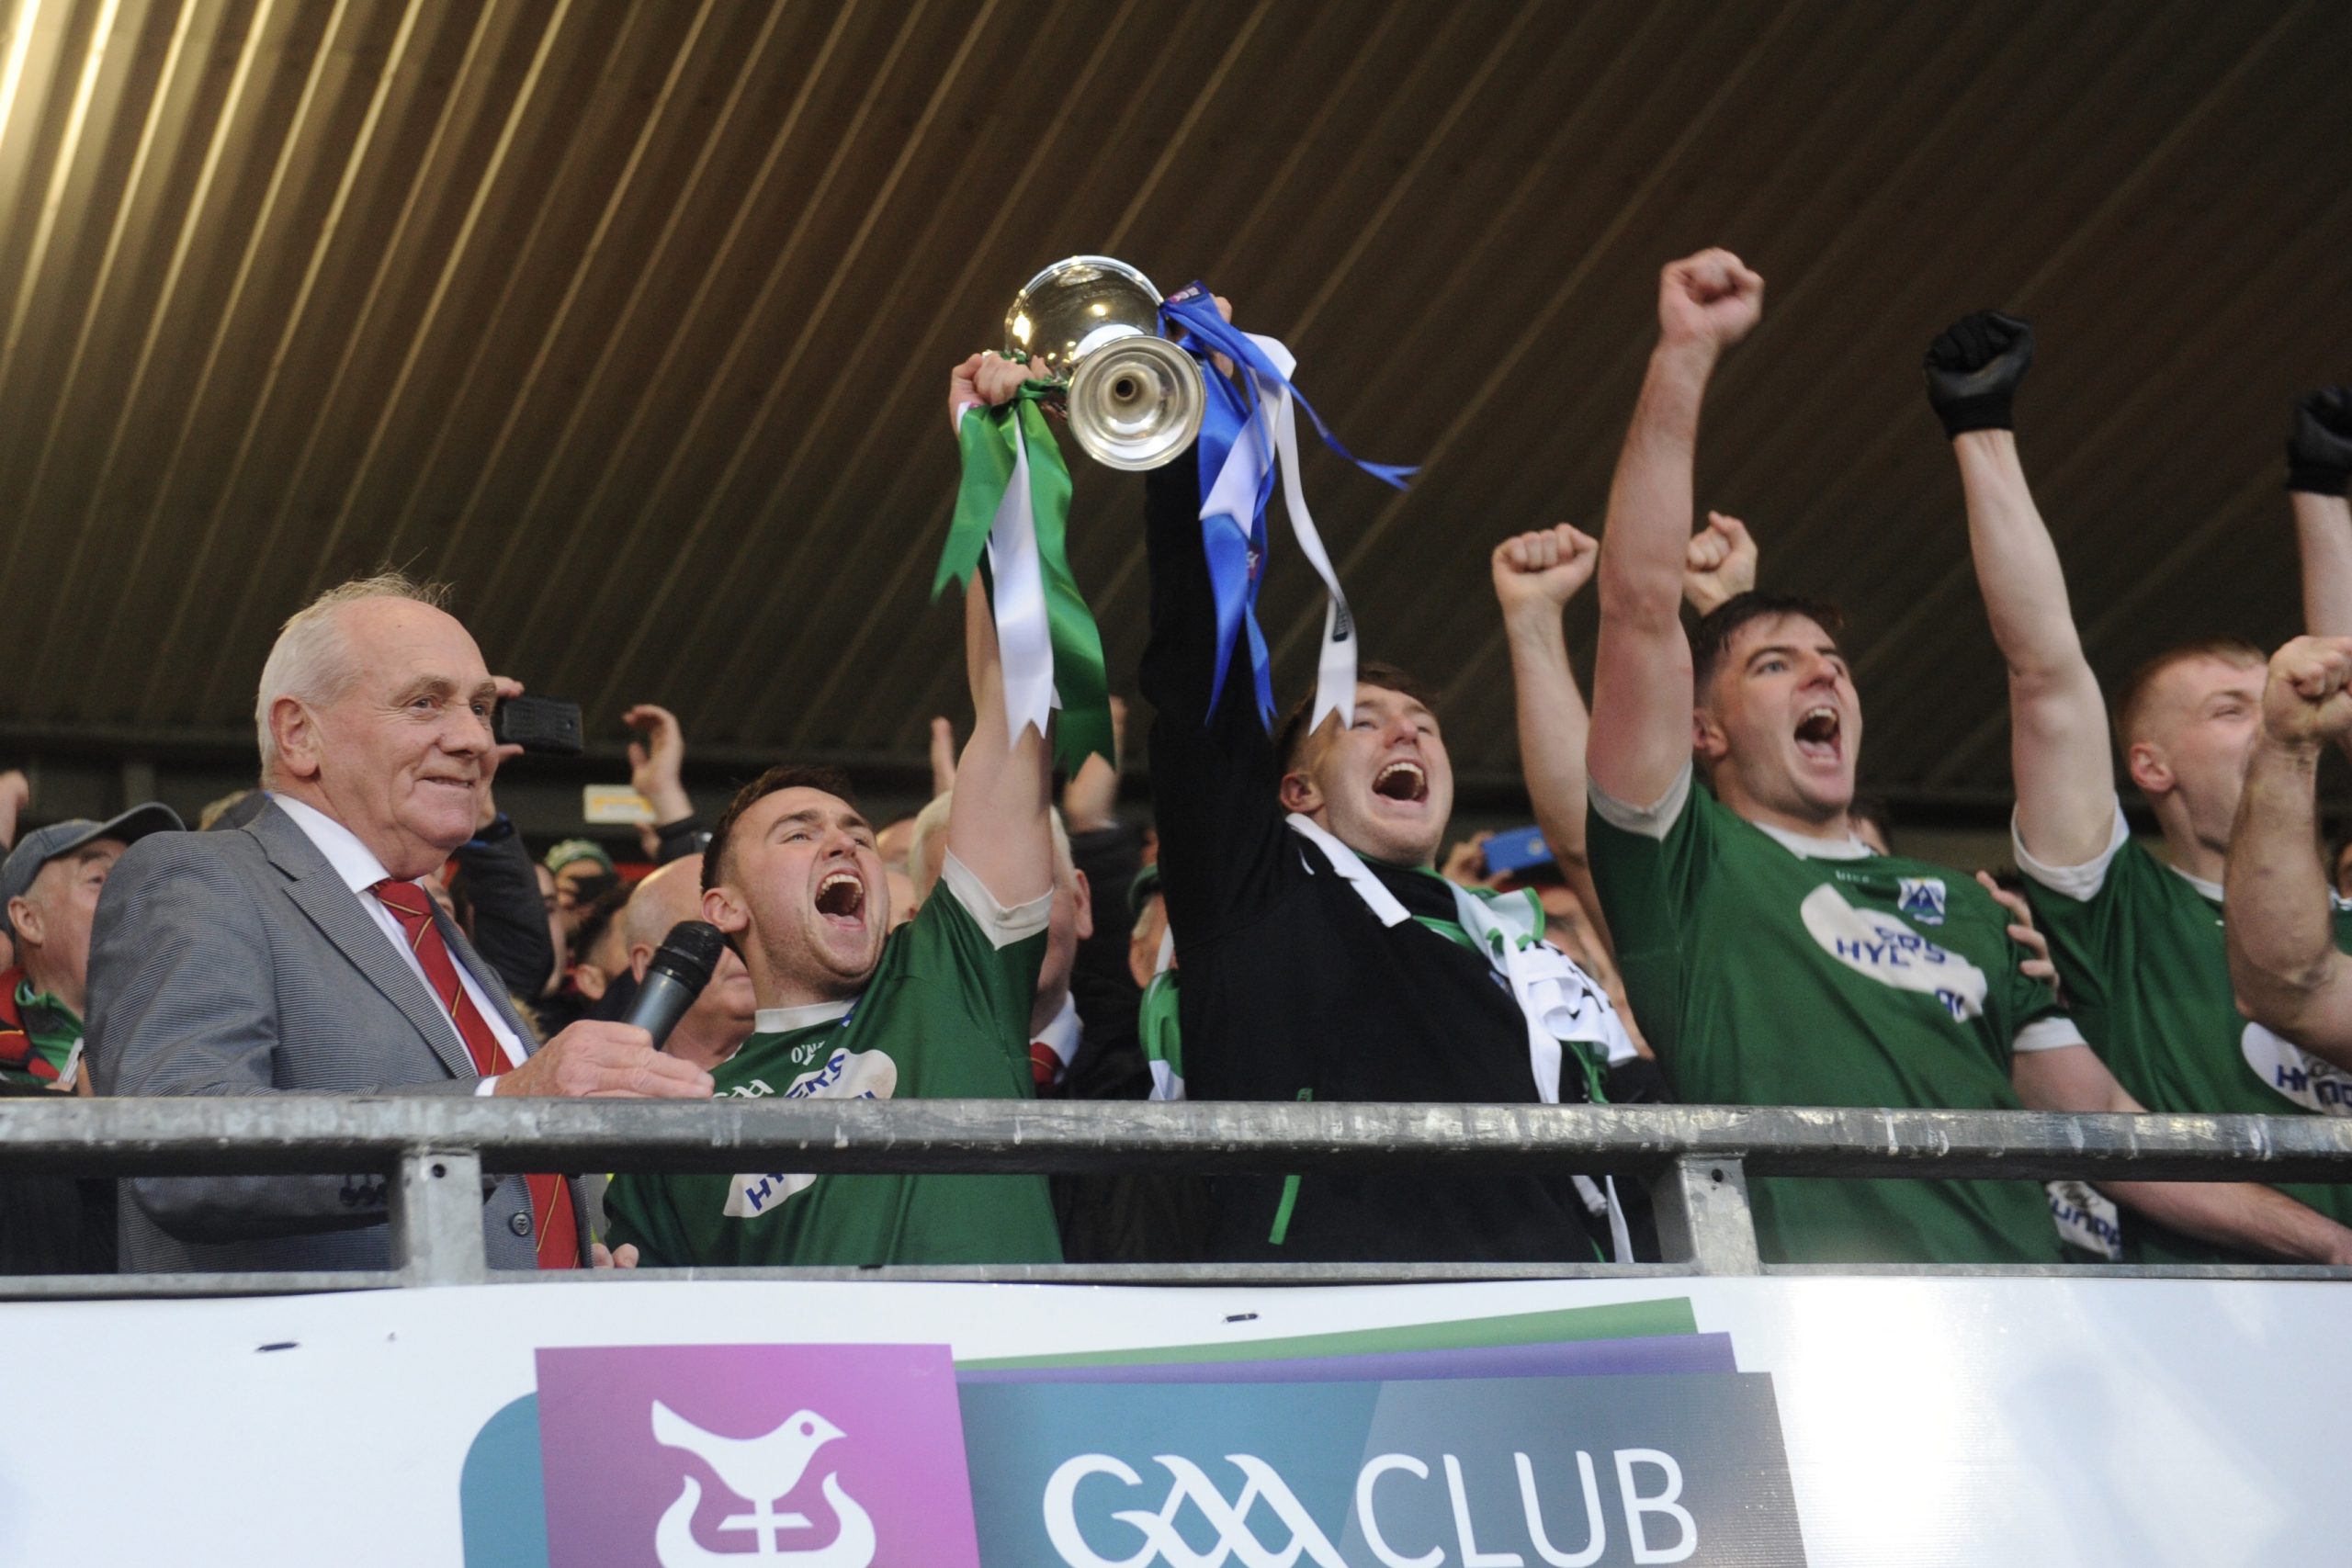 Gaoth Dobhair and Naomh Éanna claim AIB Ulster Club titles